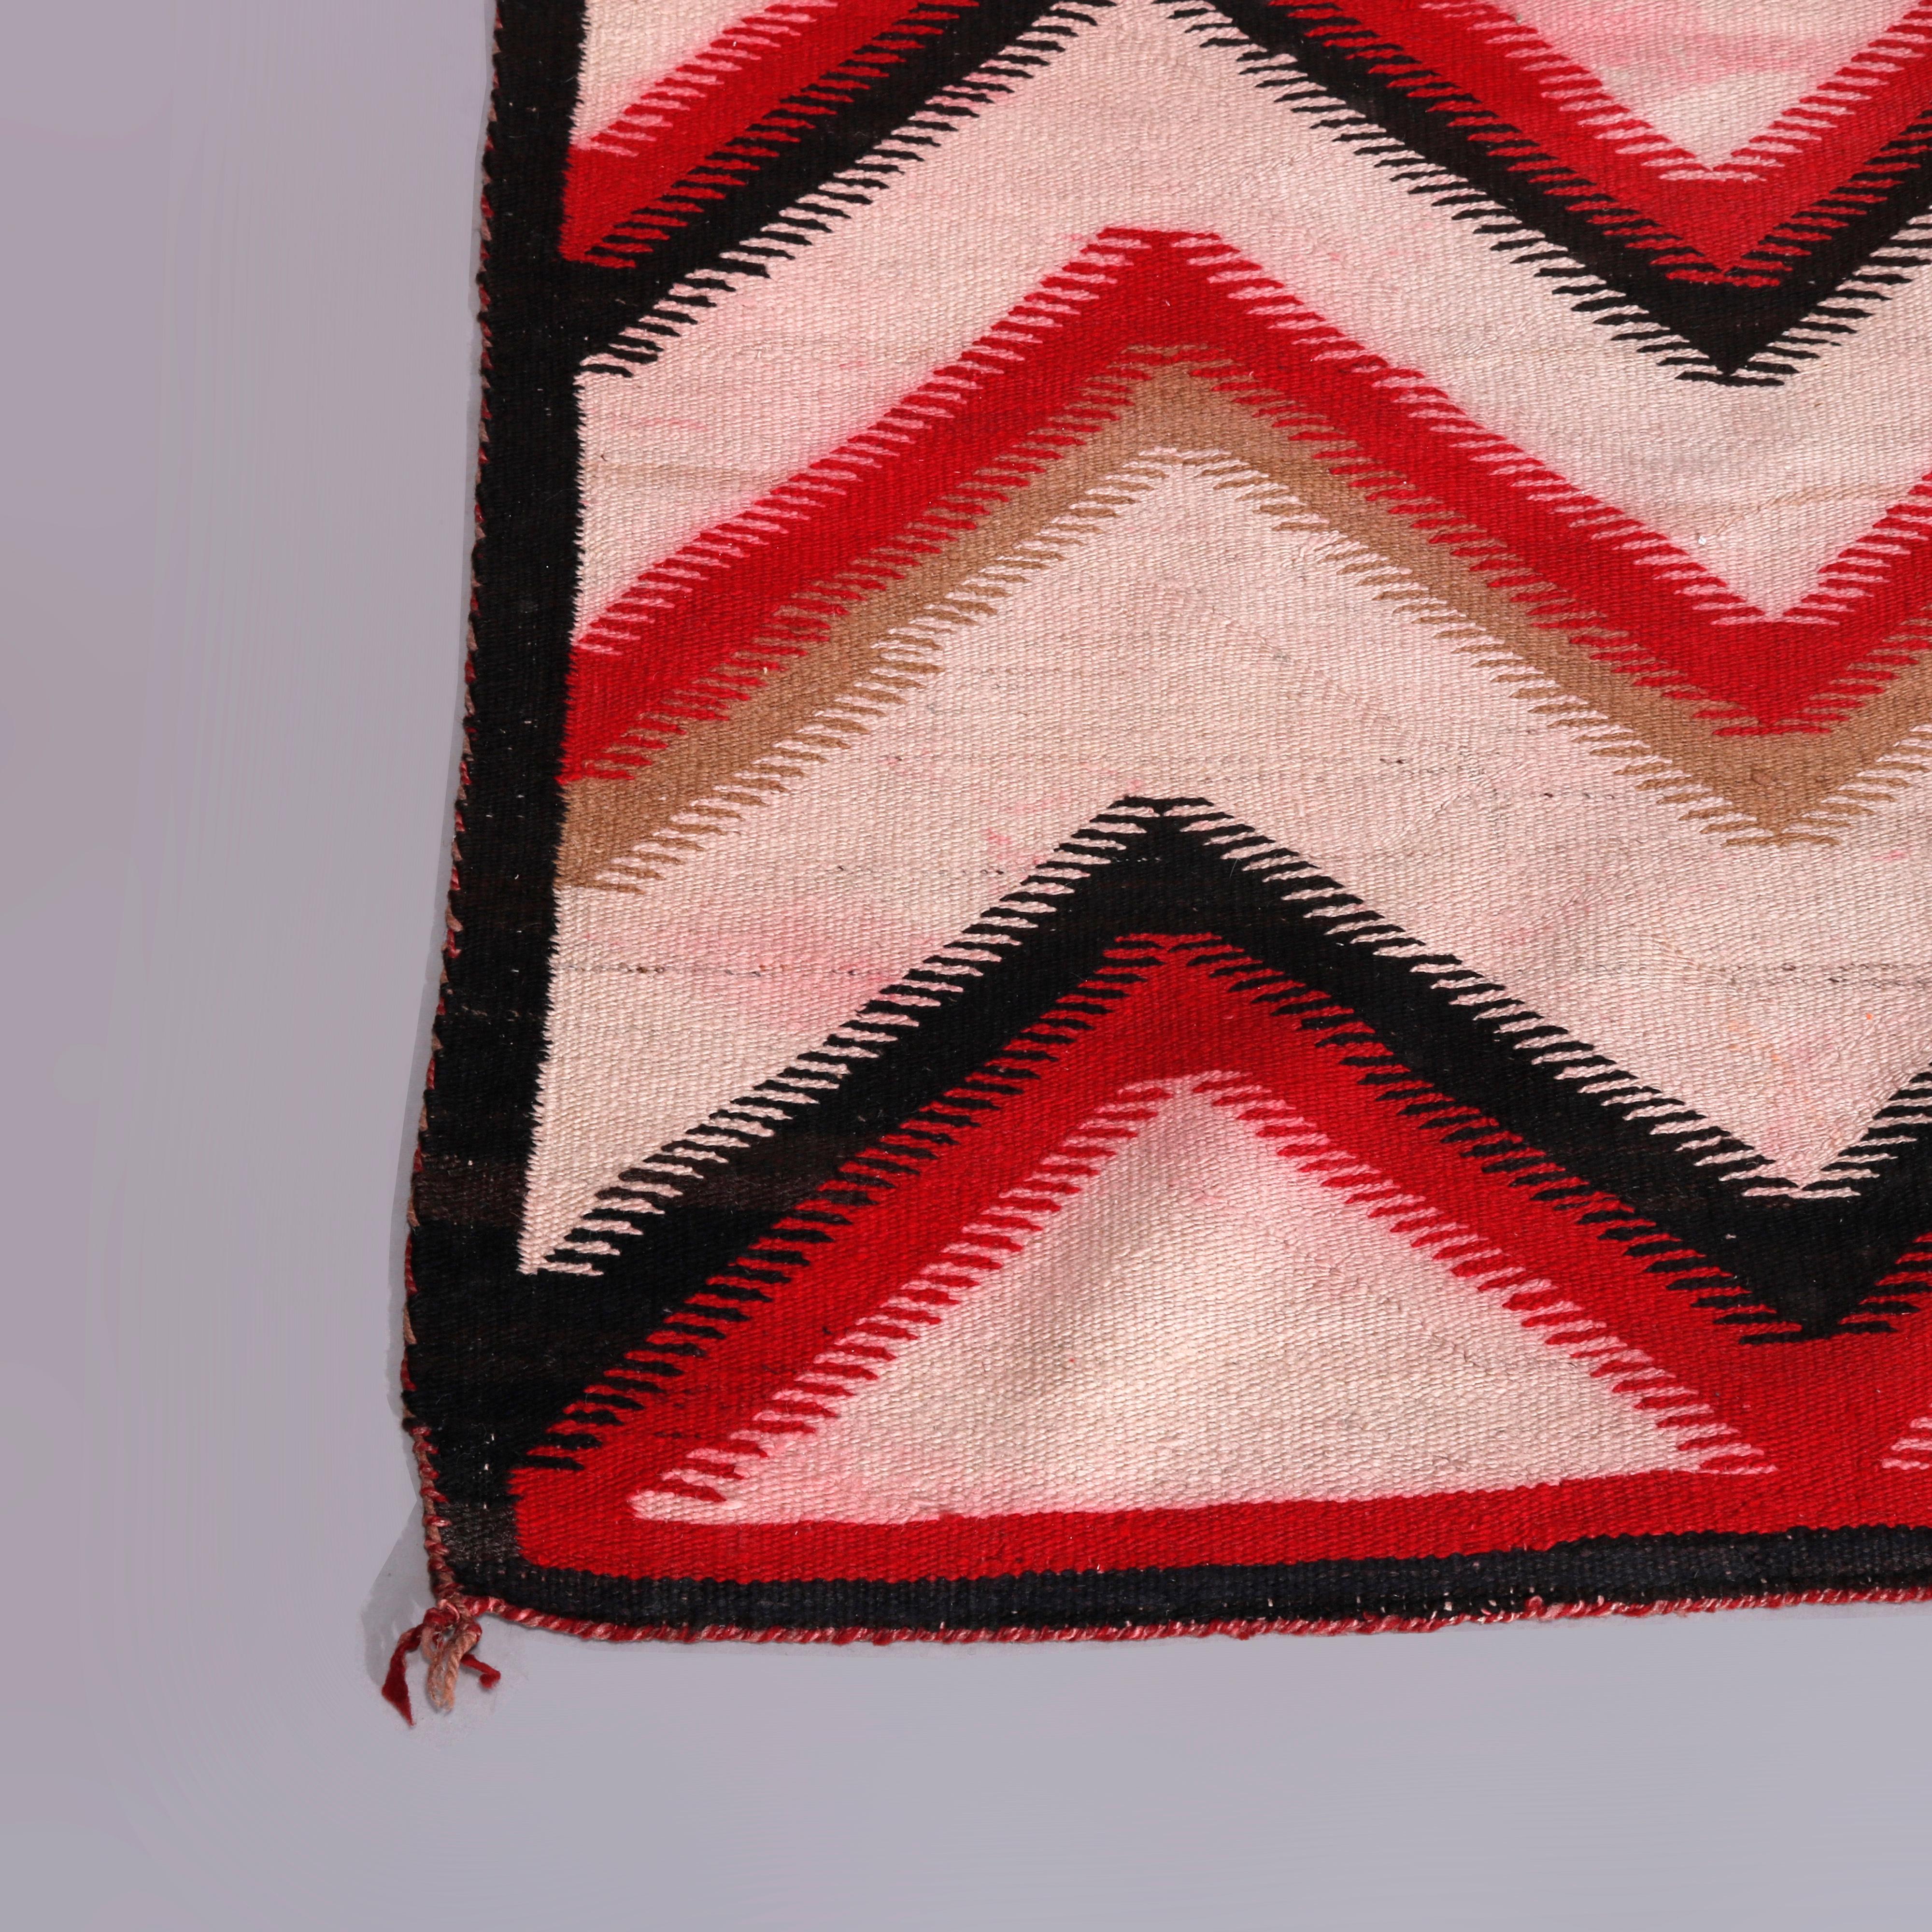 Wool Vintage Rug in the Manner of Ganado Navajo Weaving, 20th Century